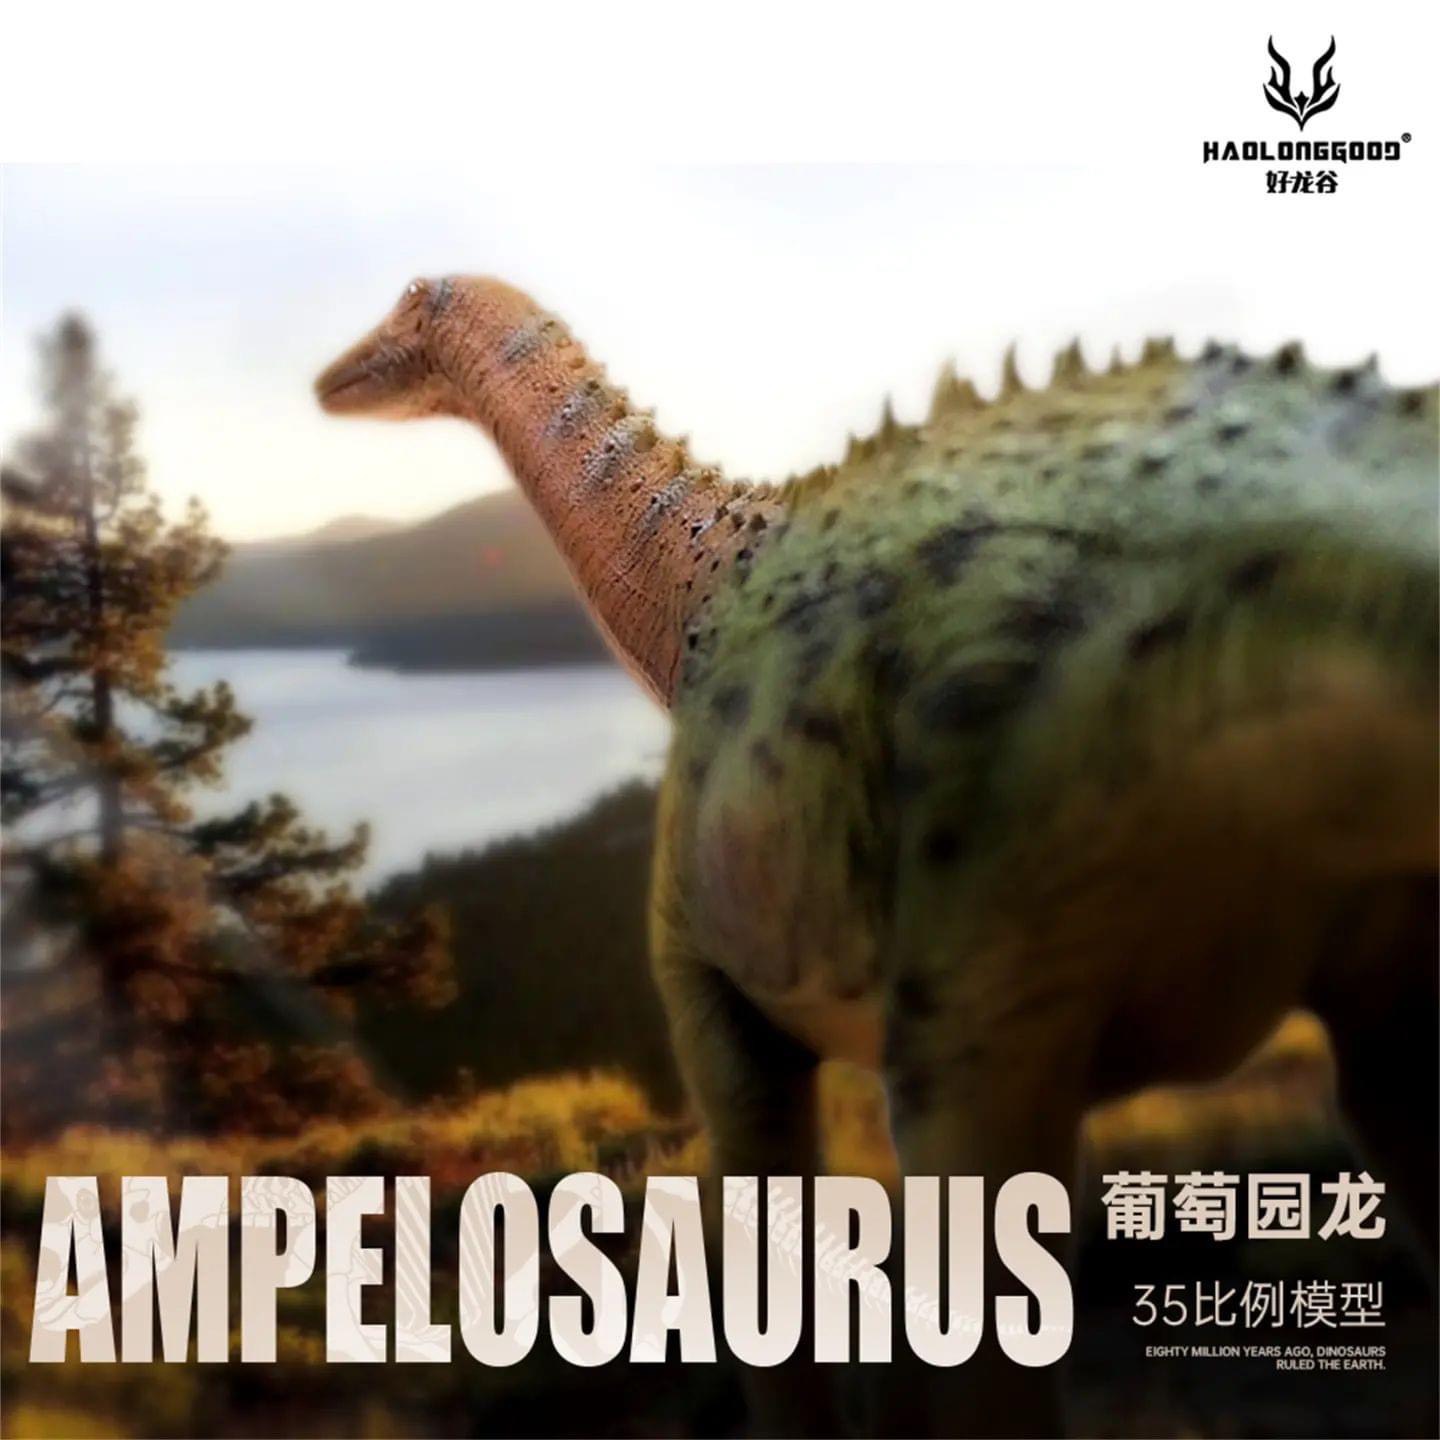 mo hinh khung long ampelosaurus haolonggood